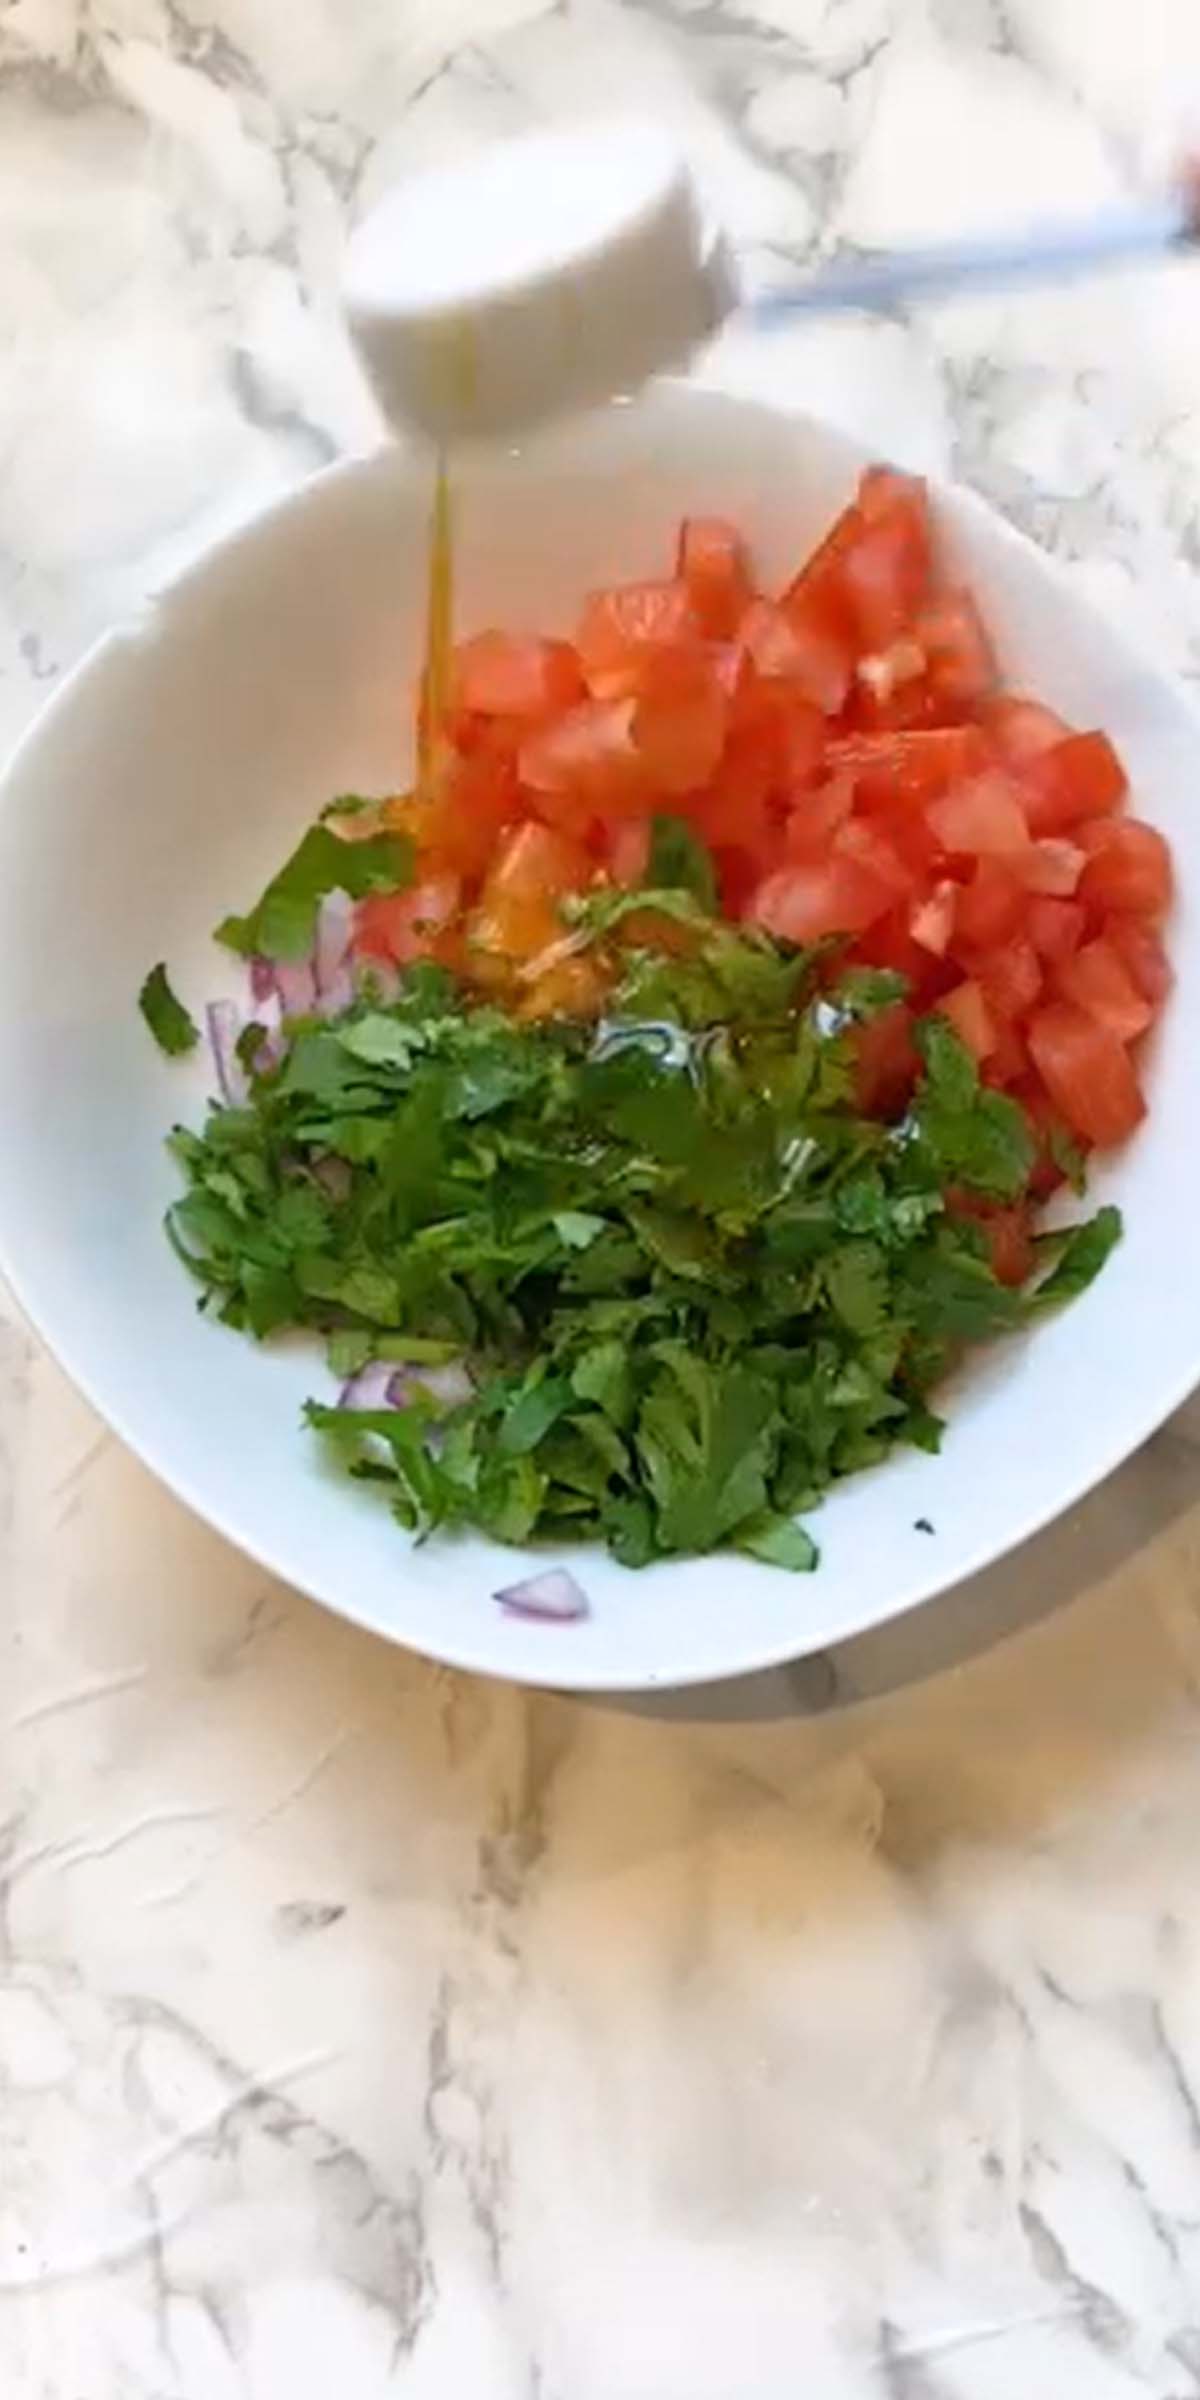 Tomato and cilantro in a bowl.